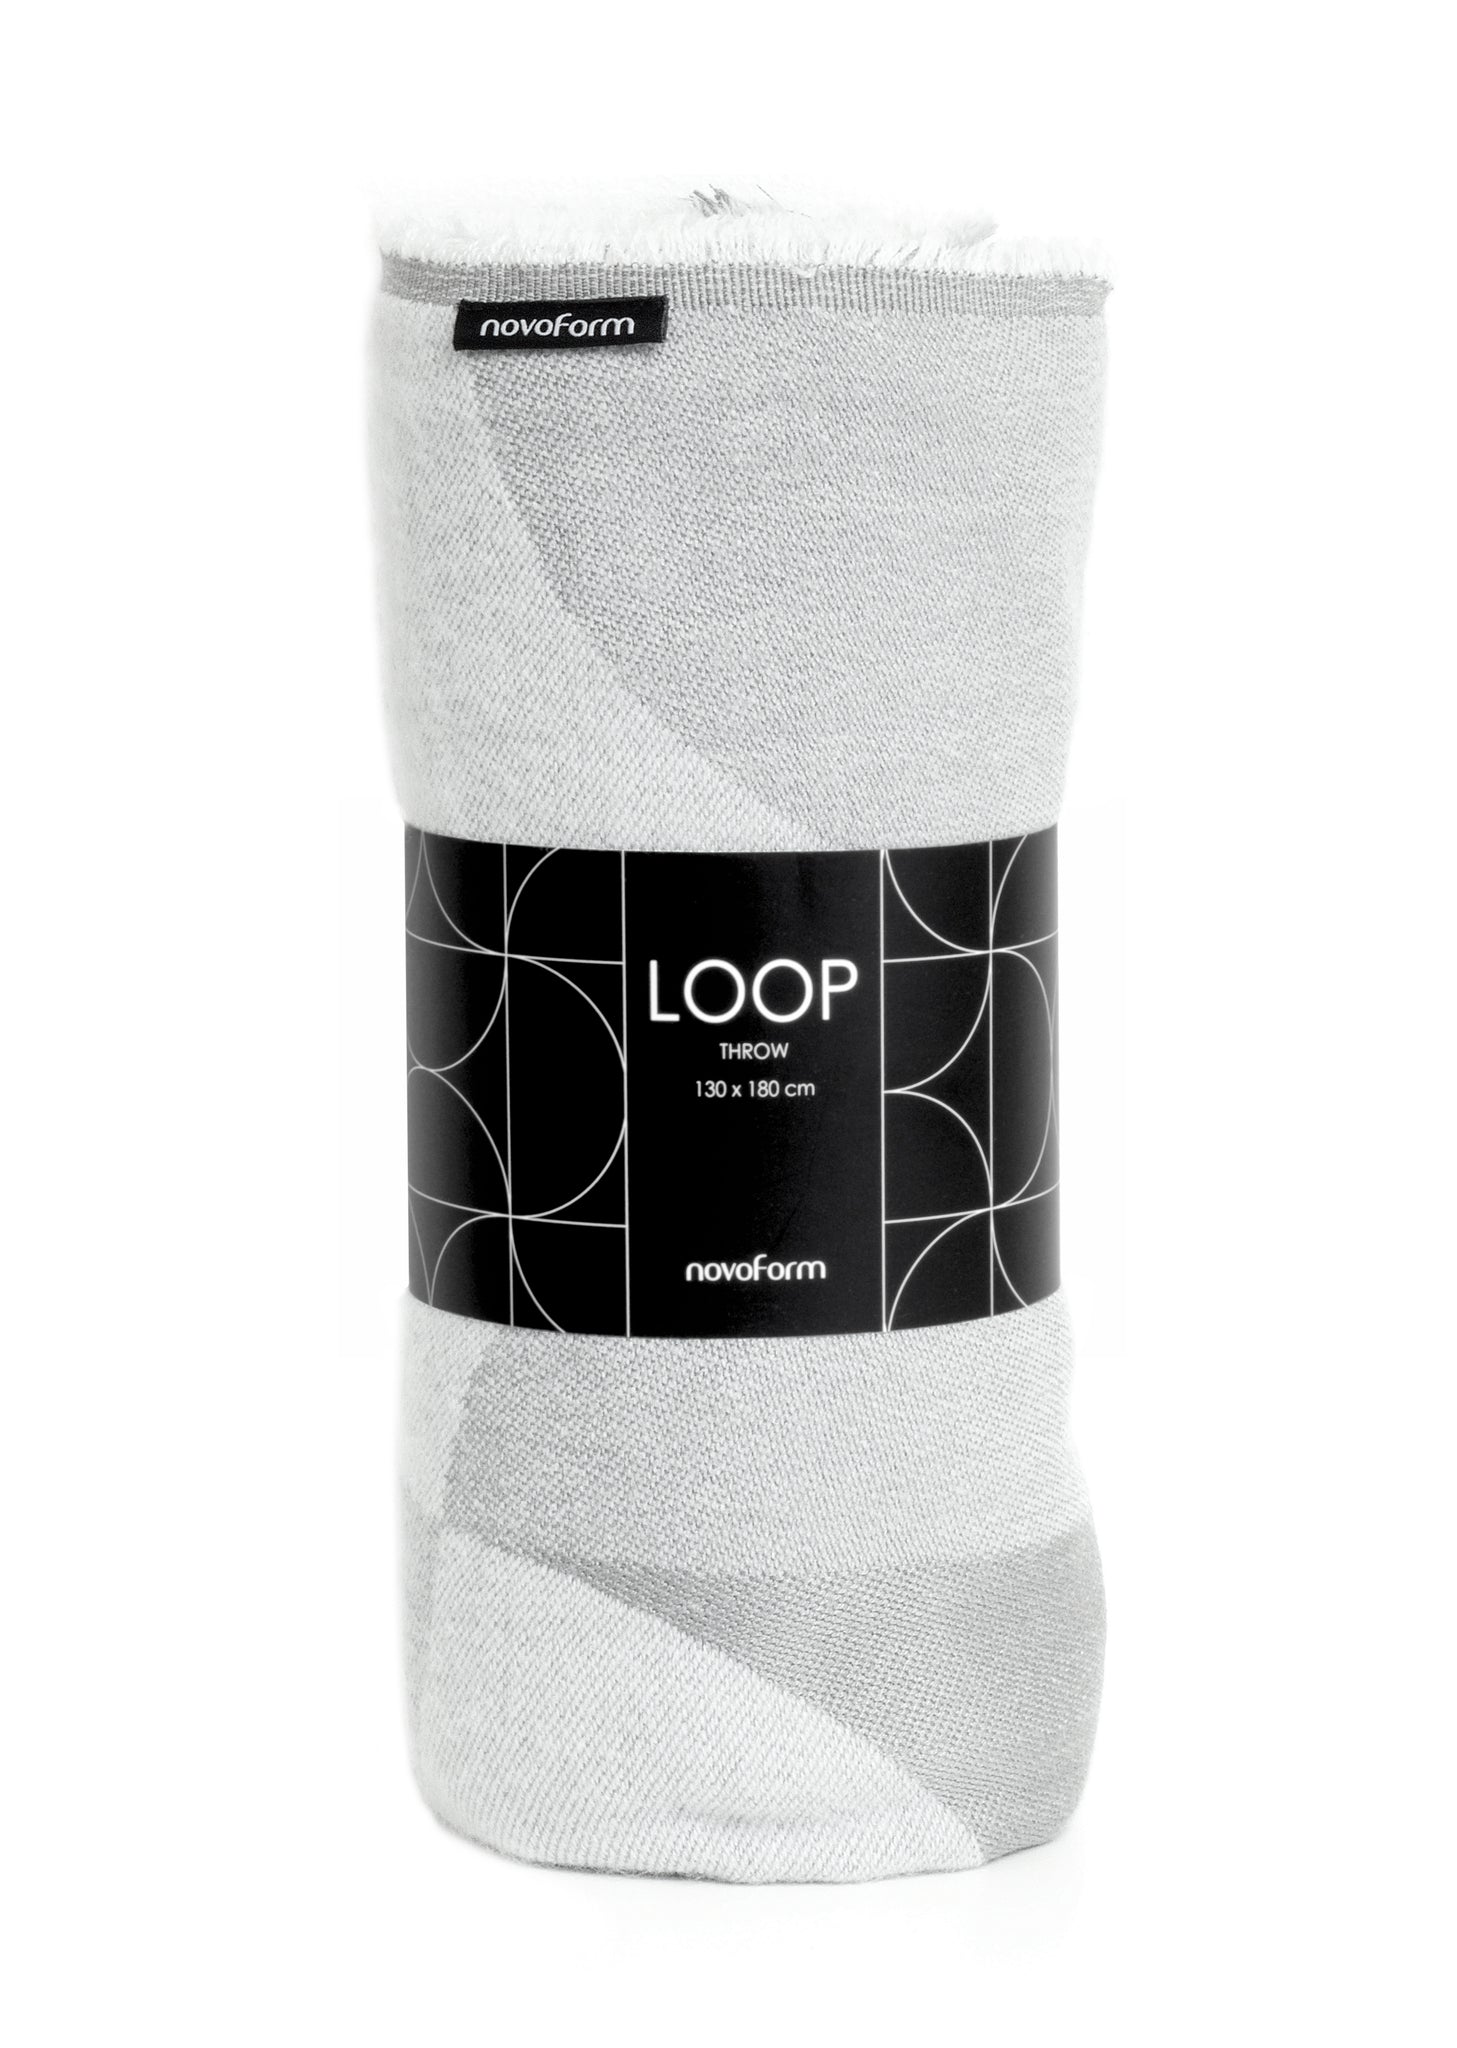 LOOP throw - cool grey